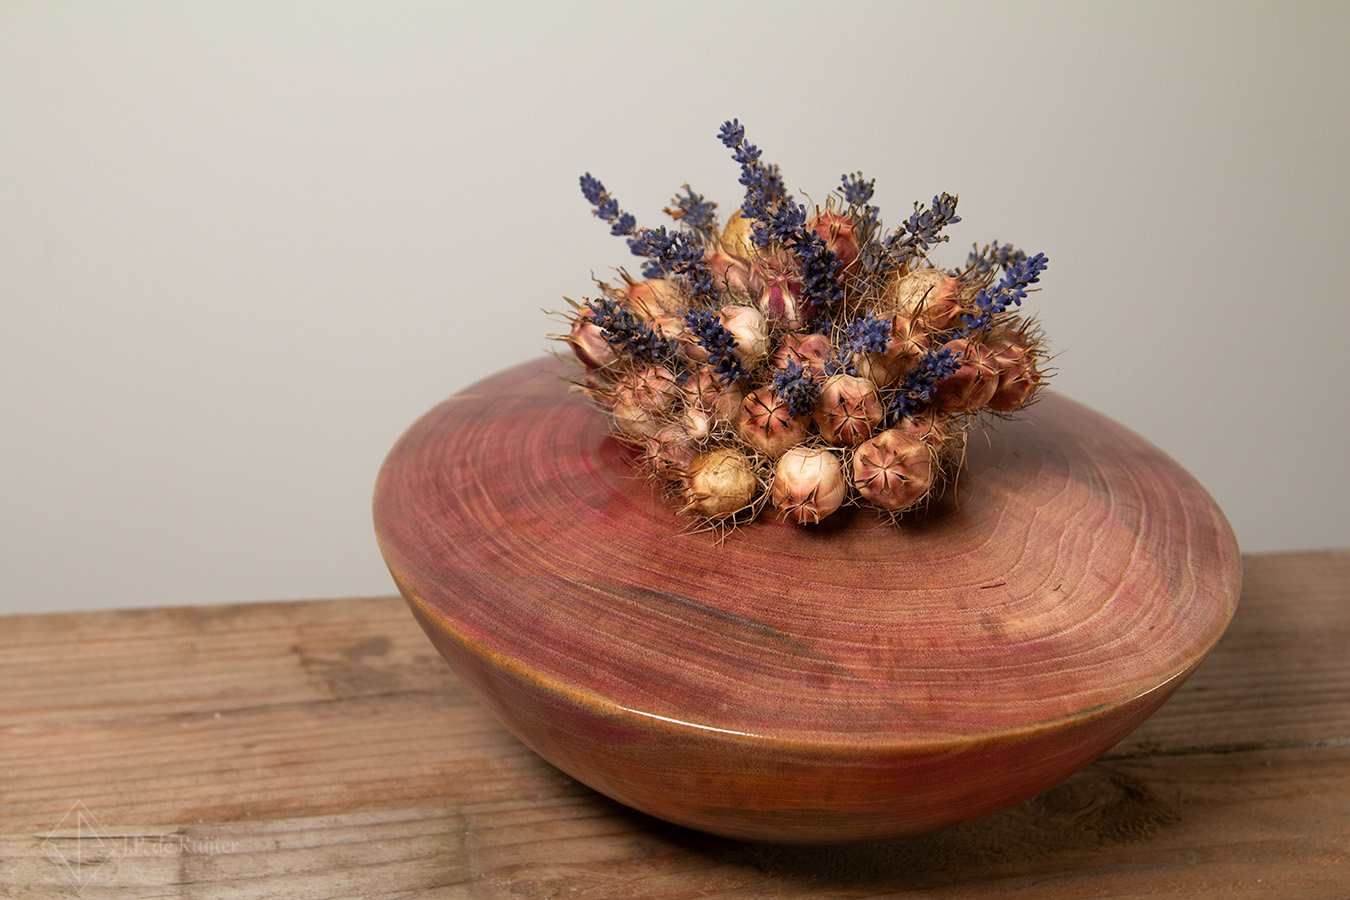 Vaas in schaal vorm gekleurd met magenta van walnoten hout in ufo vorm. Op deze vaas kunnen droog, zijde en kunst bloemen. Zonder bloemen is het een kleurrijk kunst object van hout.